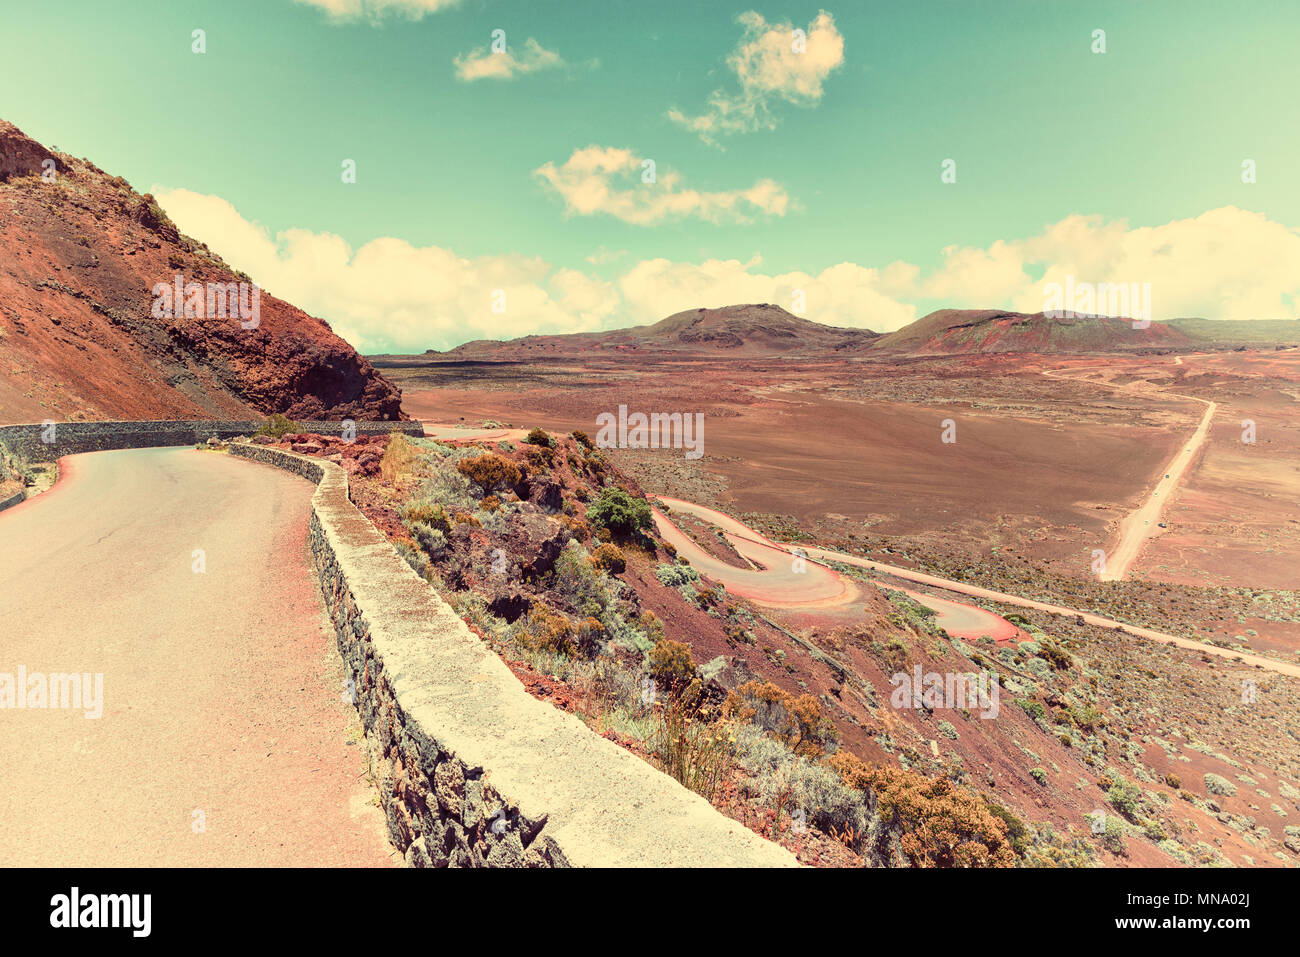 La plaine des sables : sulla strada che conduce al Piton de la Fournaise' vulcano su réunion, Oceano indiano, vecchio stile, colori Foto Stock